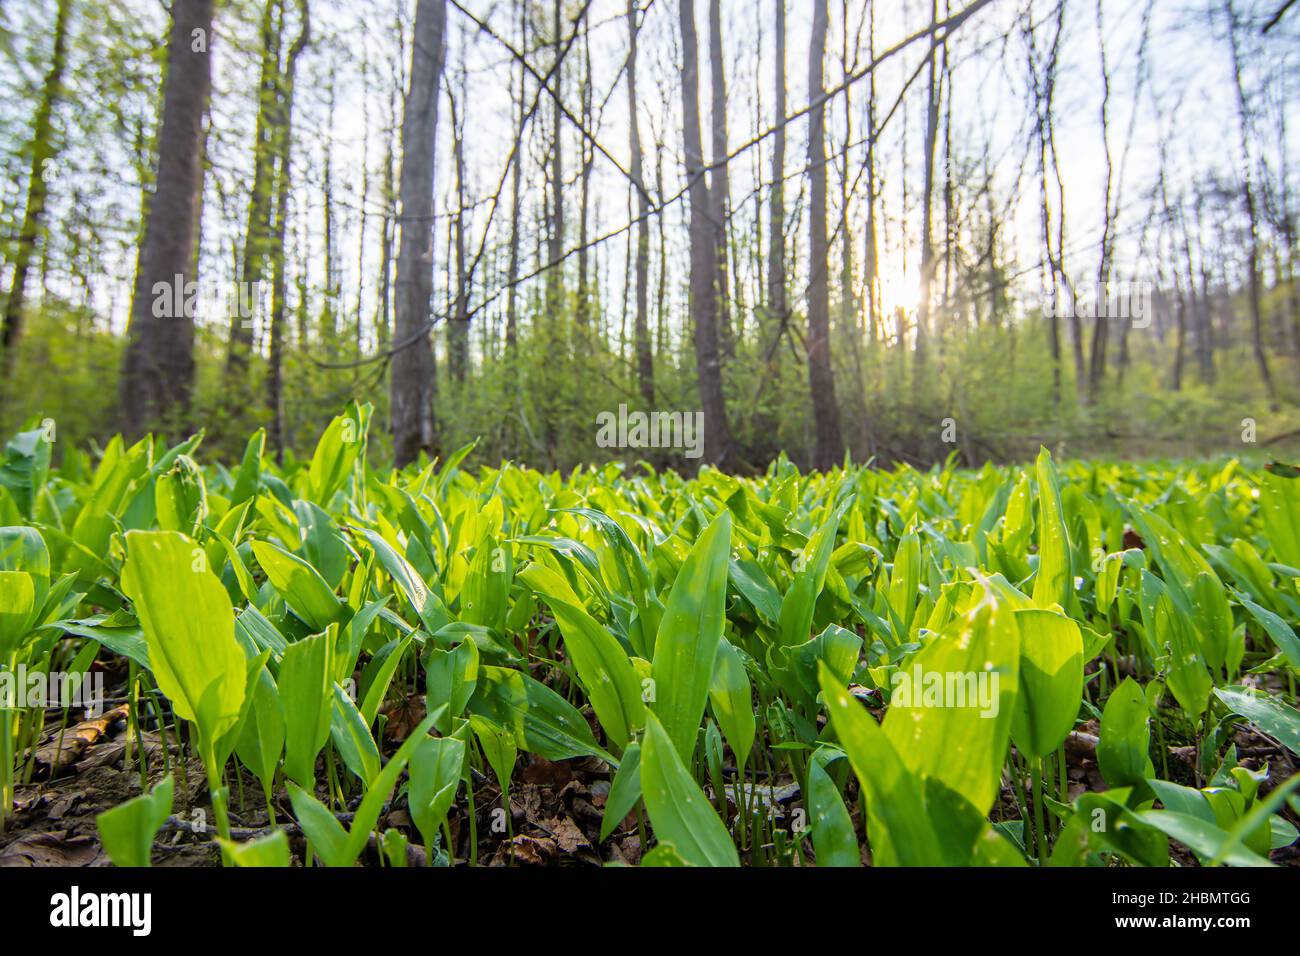 Rodung im Wald, wo Bärlauch, der als Bärlauch oder Allium ursinum bekannt ist, wächst, medizinische Kräuter, die der Nahrung als Gewürz hinzugefügt werden. Stockfoto